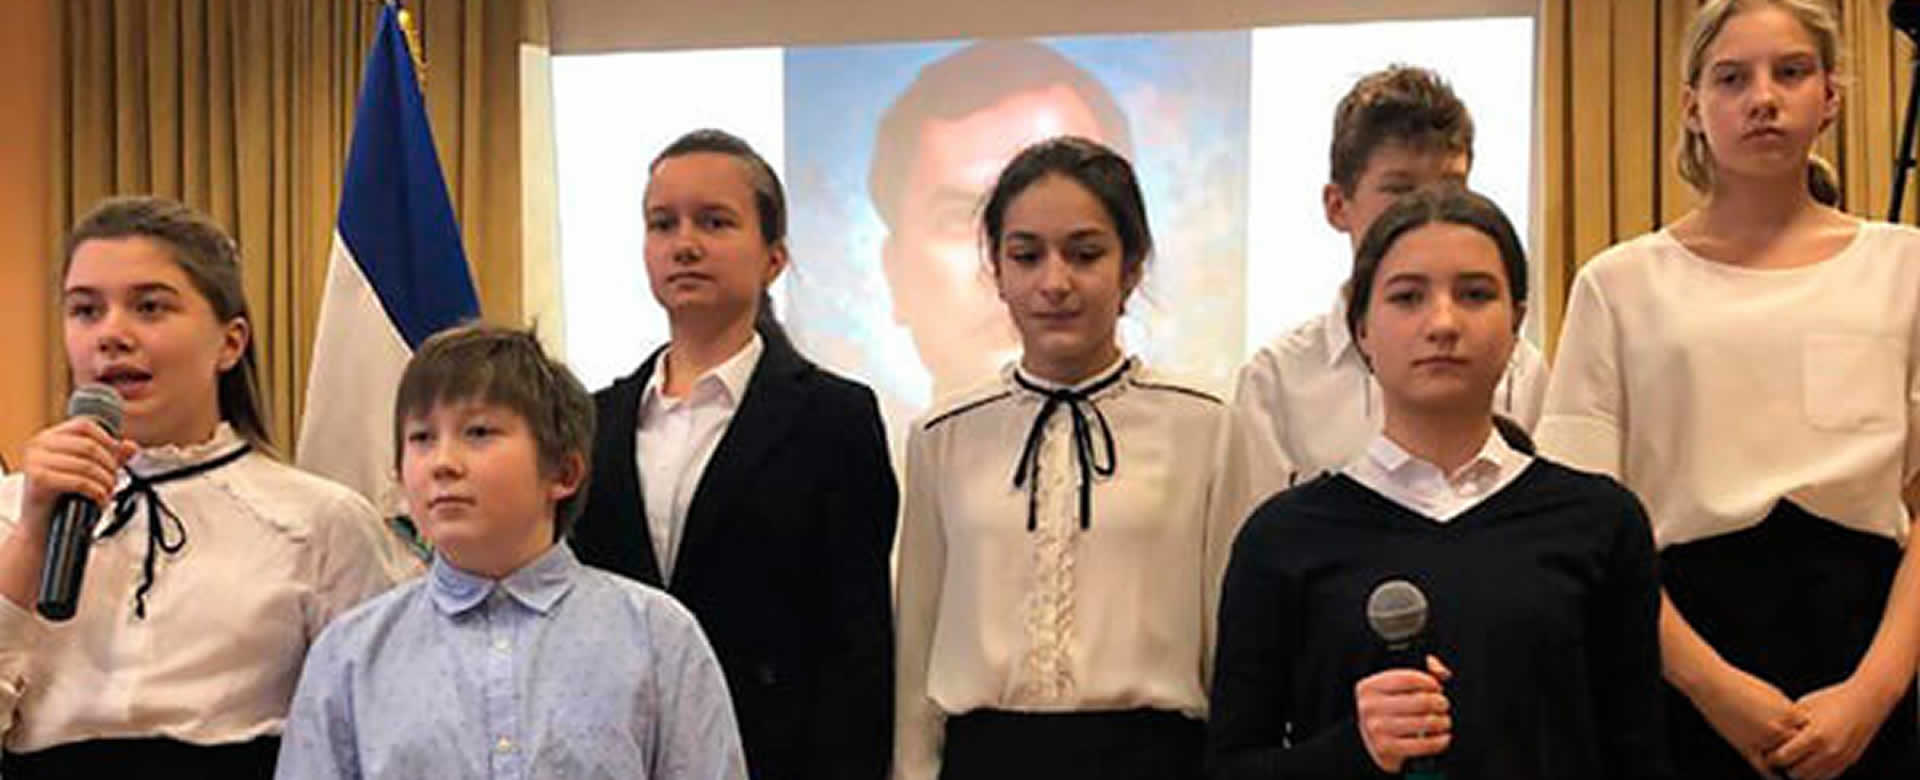 Escuela rusa realiza concierto en homenaje a Rubén Darío